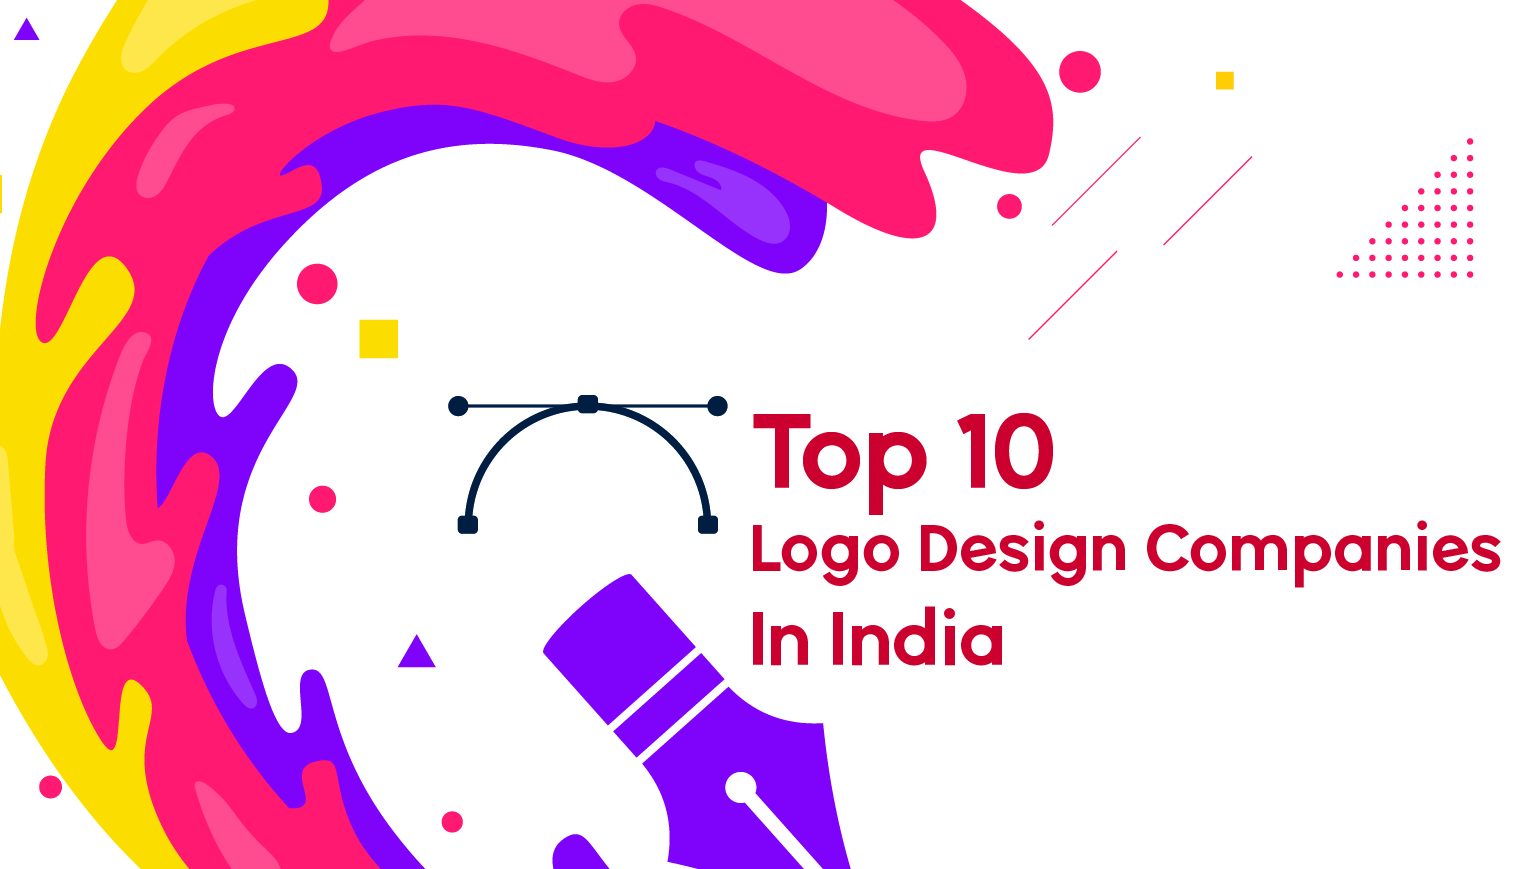 Top 10 Logo Design Companies In India